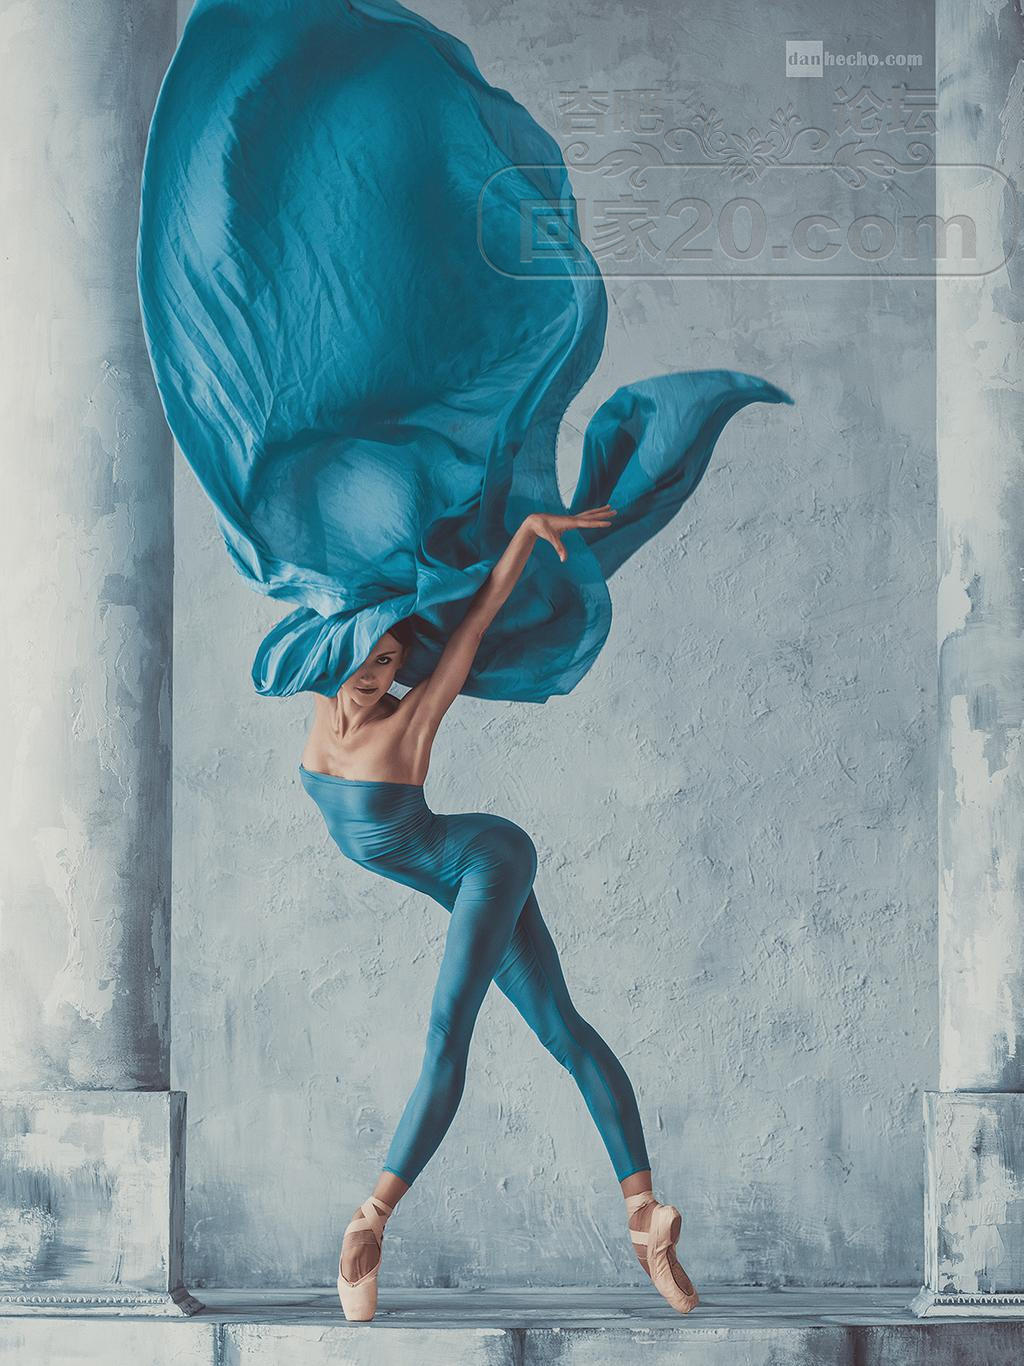 Art Fashion Ballet by DanHecho on DeviantArt.jpg